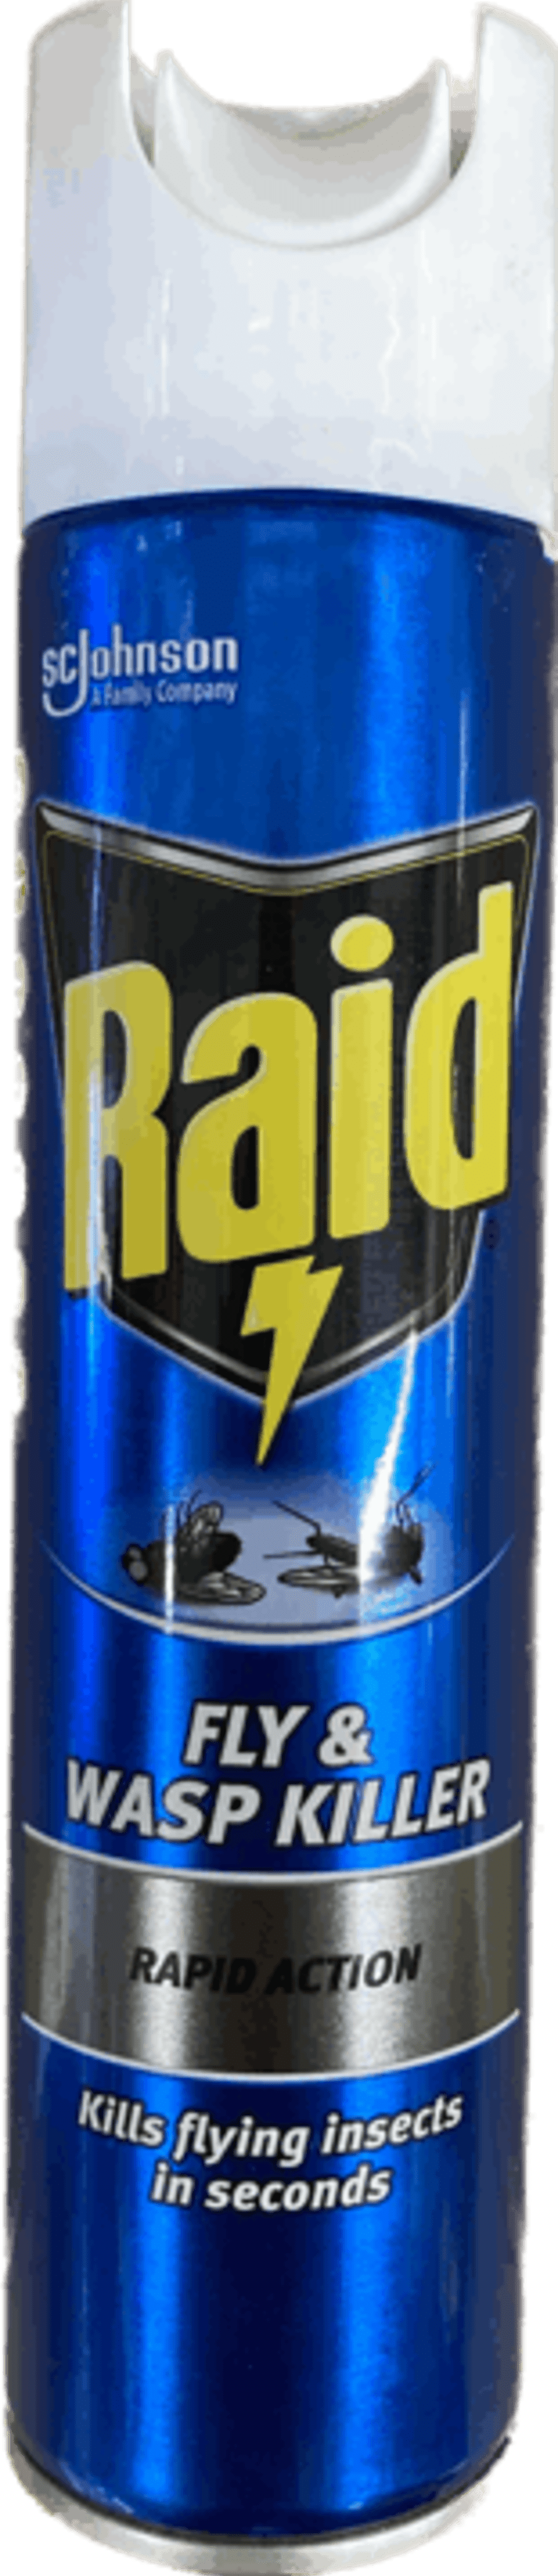 raid flugnaeitur 300 ml